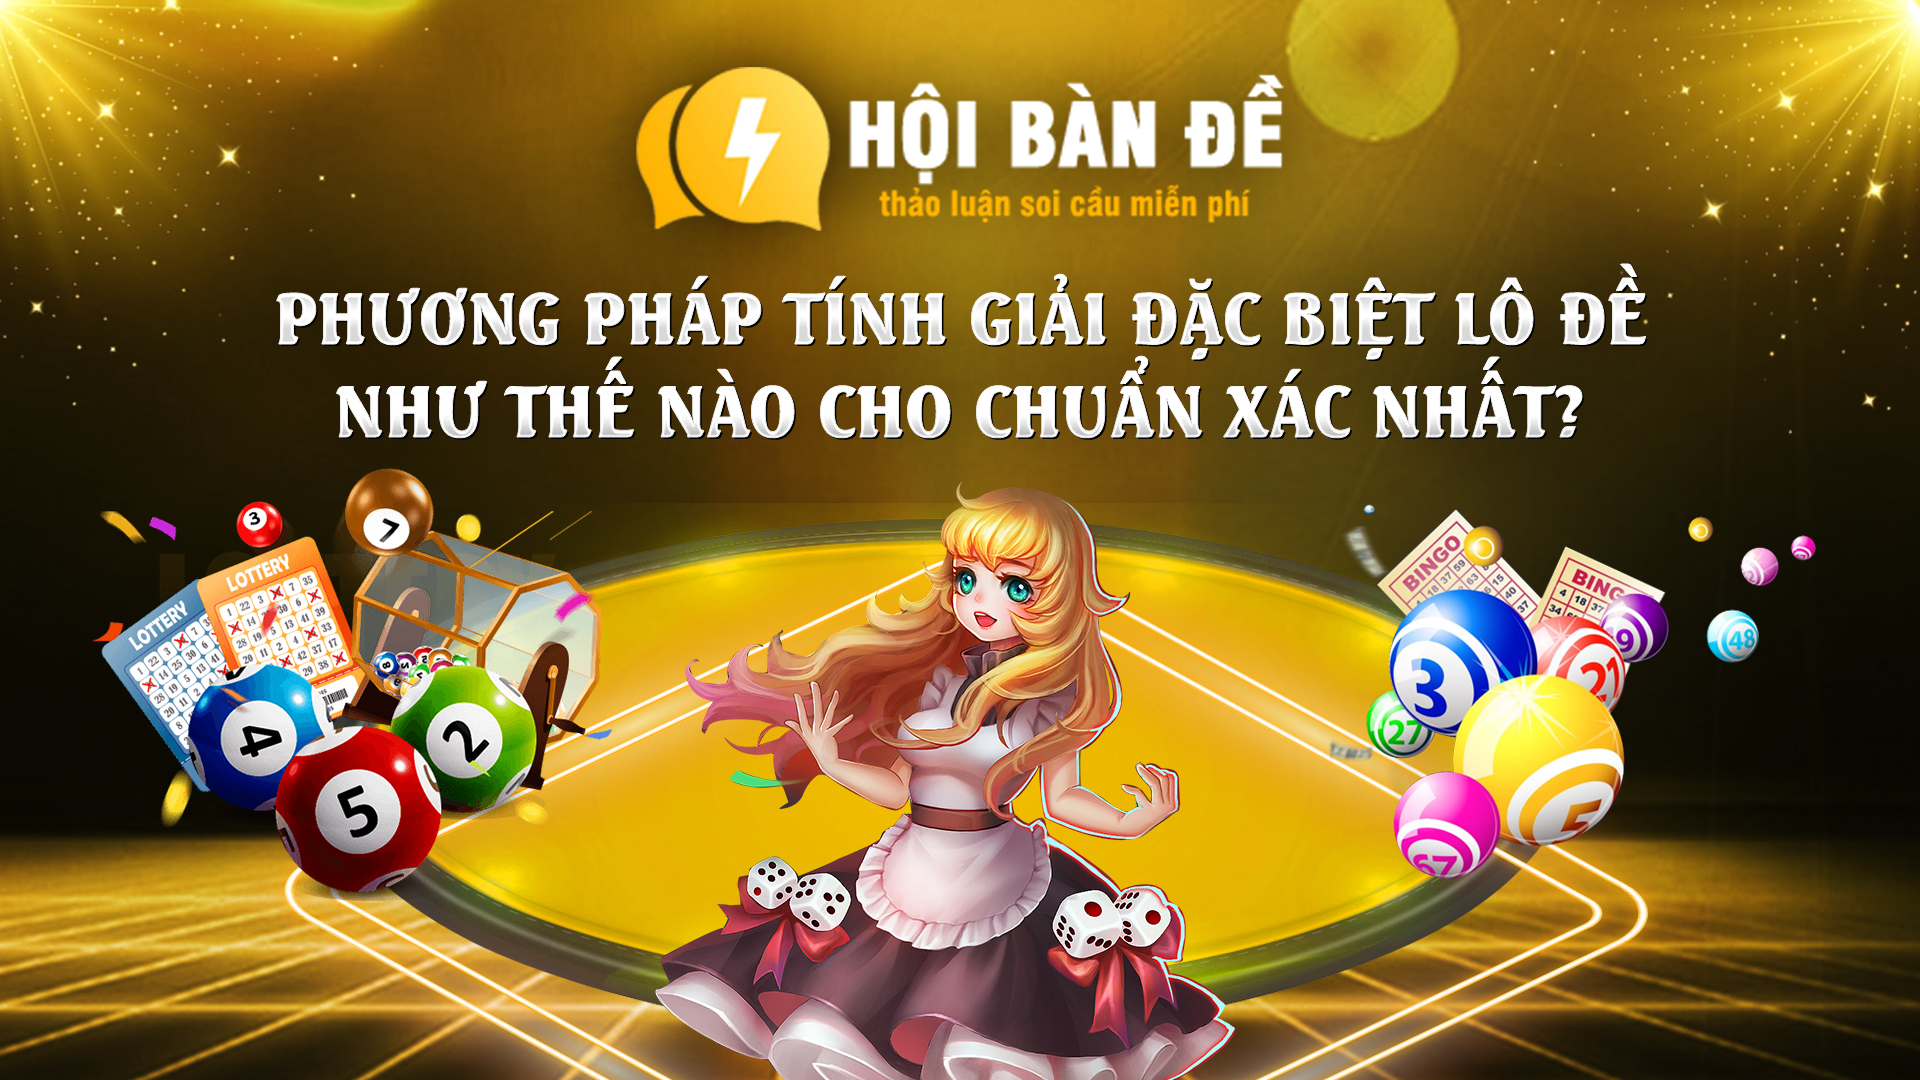 Phuong Phap Tinh Giai Dac Biet Lo De Nhu The Nao Cho Chuan Xac Nhat